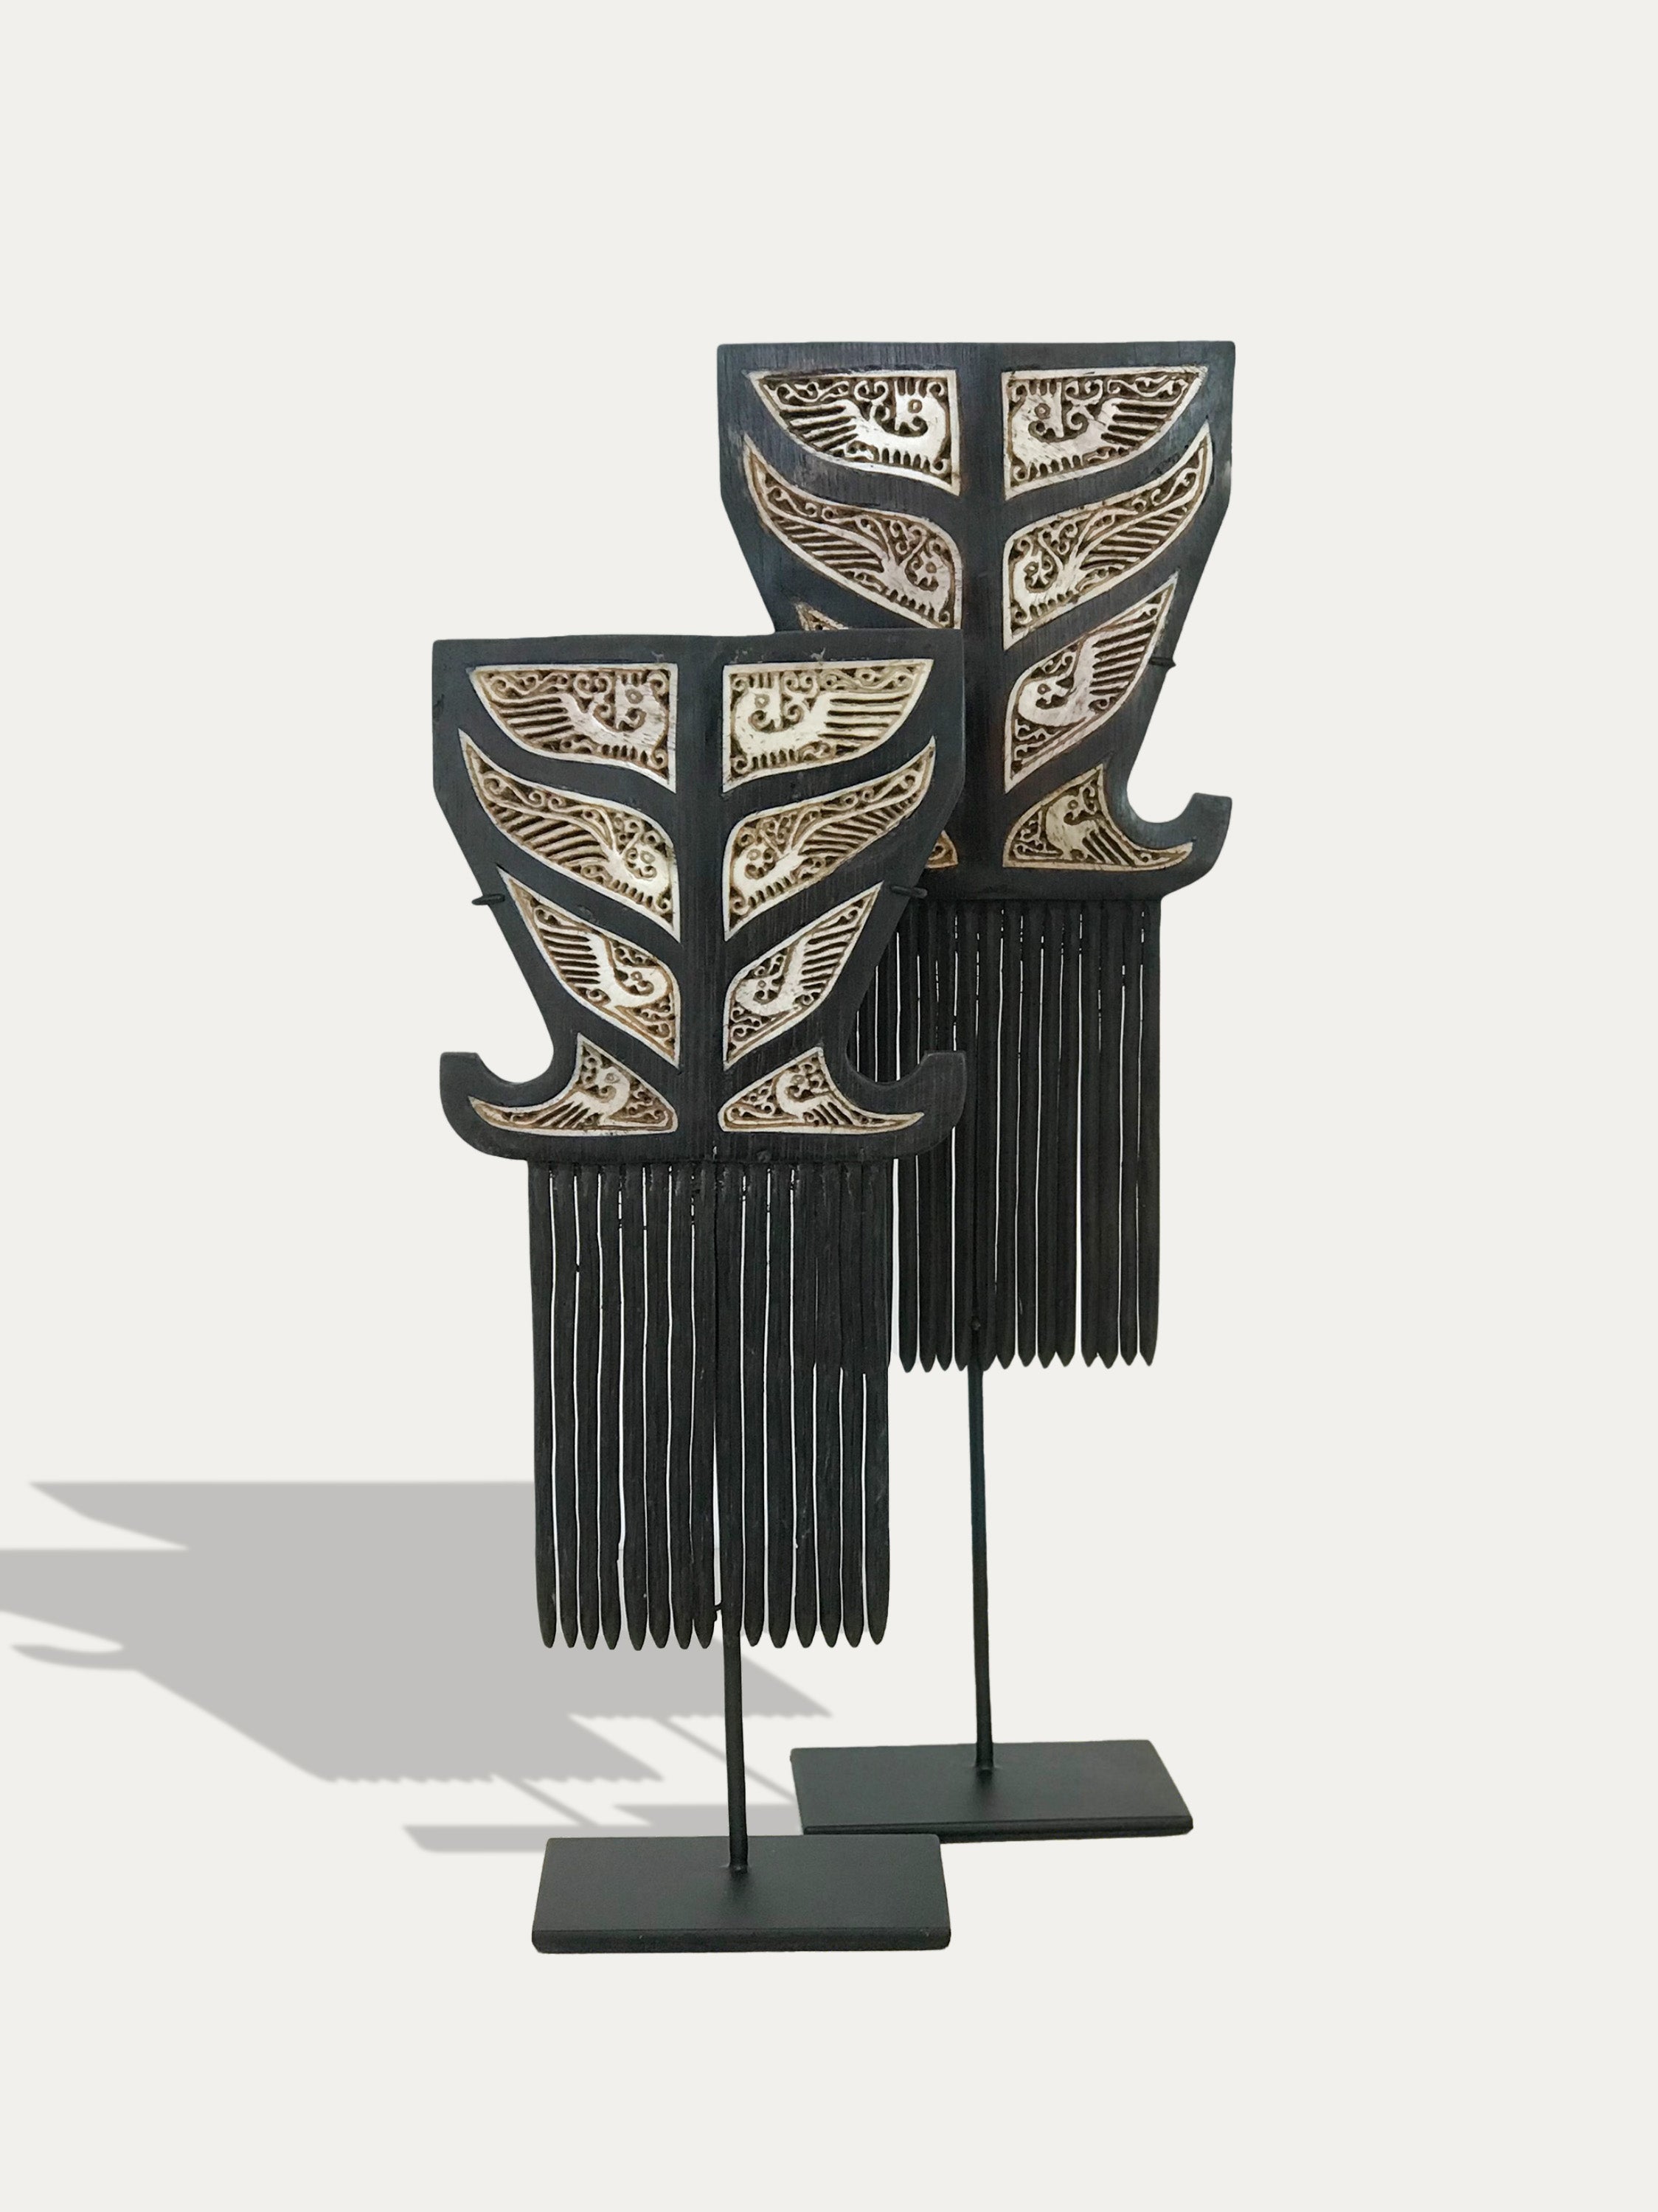 Combs from Tanimbar  - Asian Art from Kirschon